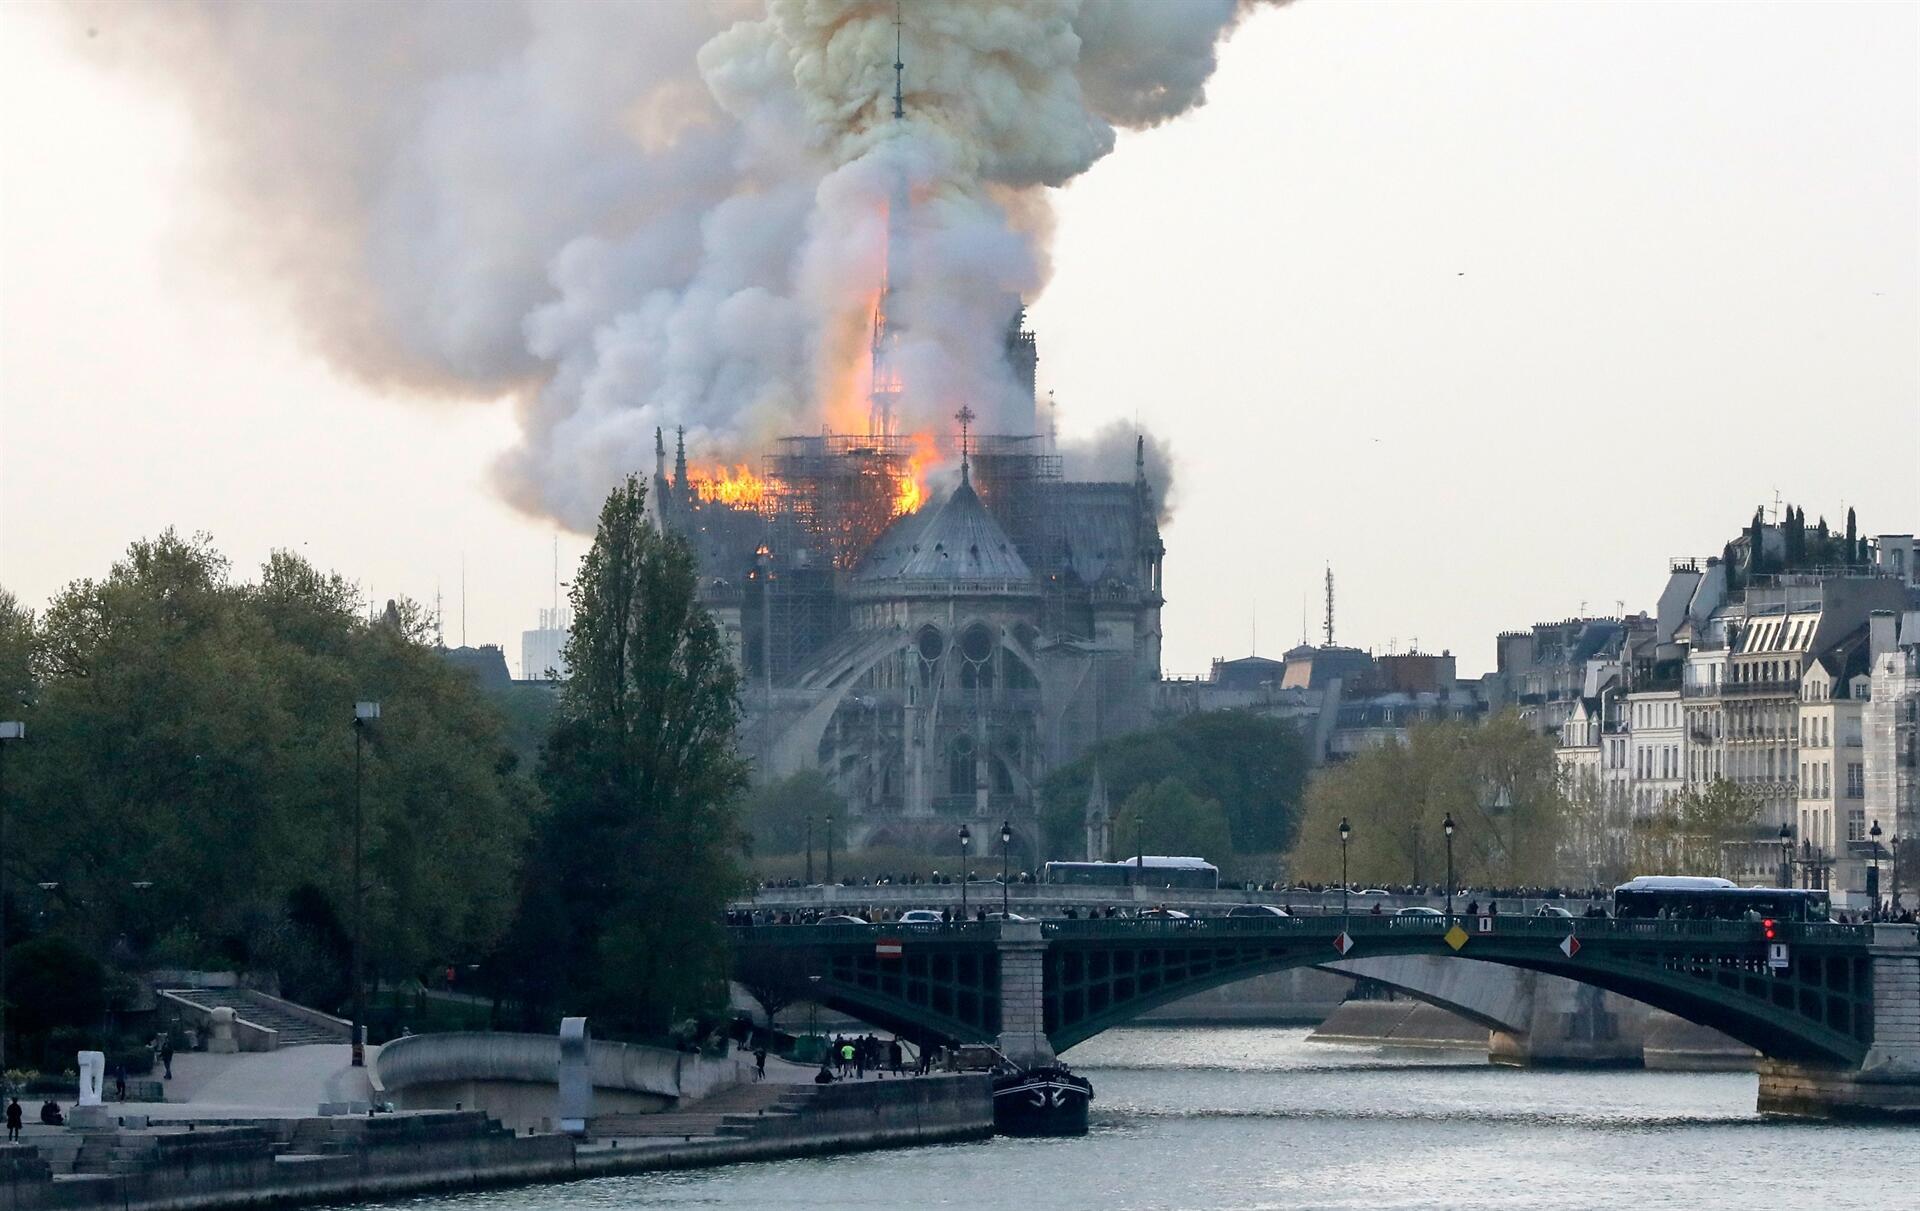 Dünyaca ünlü Notre Dame Katedrali'nde yangın çıktı